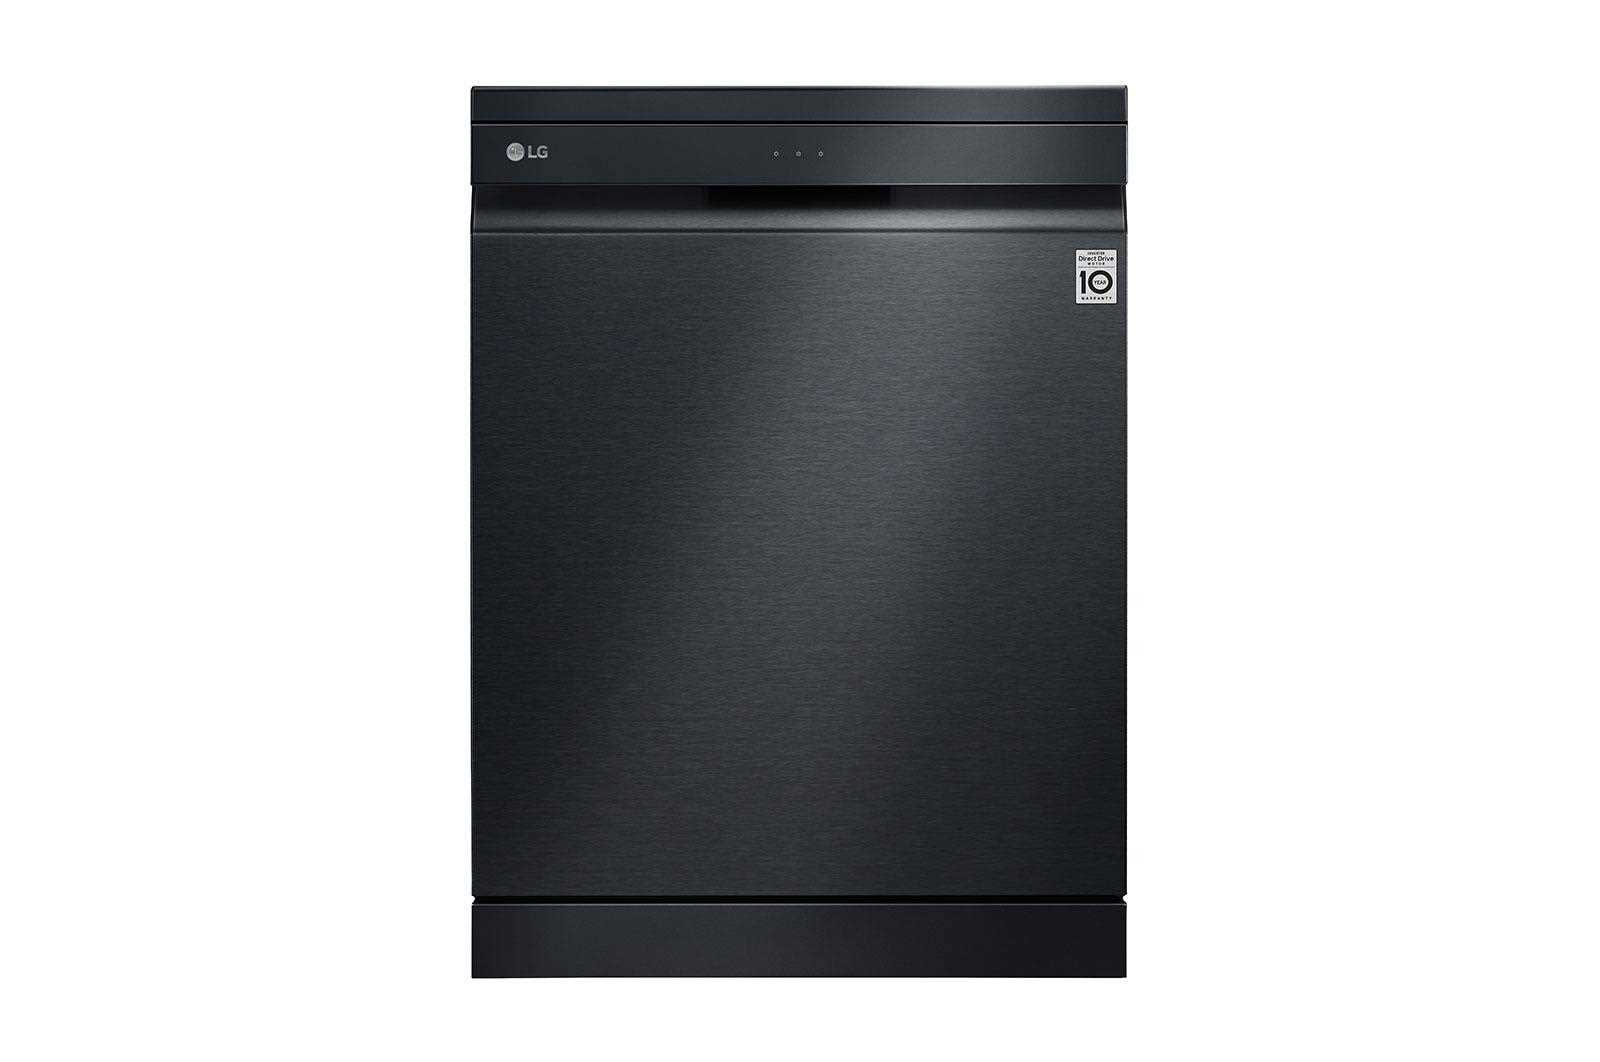 Black Dishwasher Front.jpg